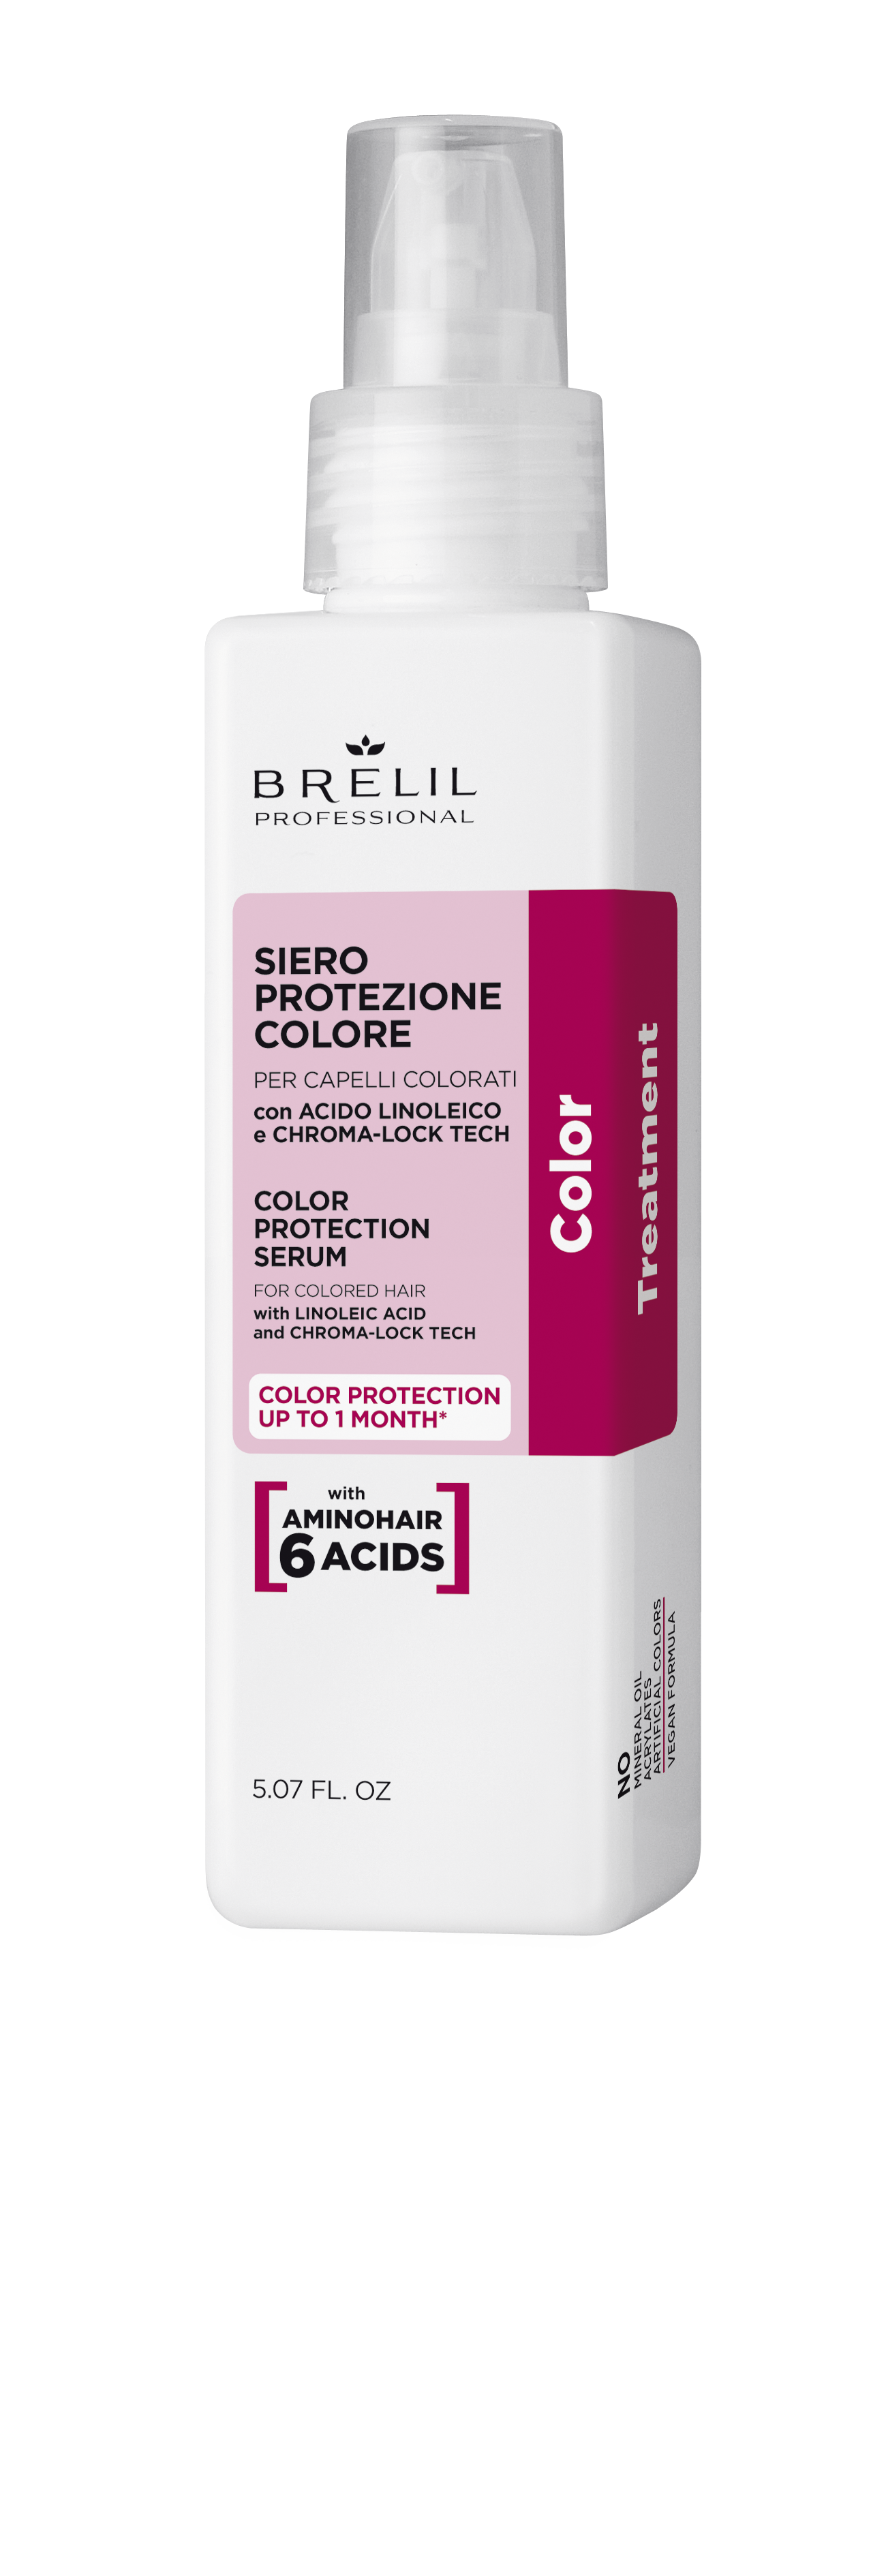 Color Treatment Siero Protezione Colore